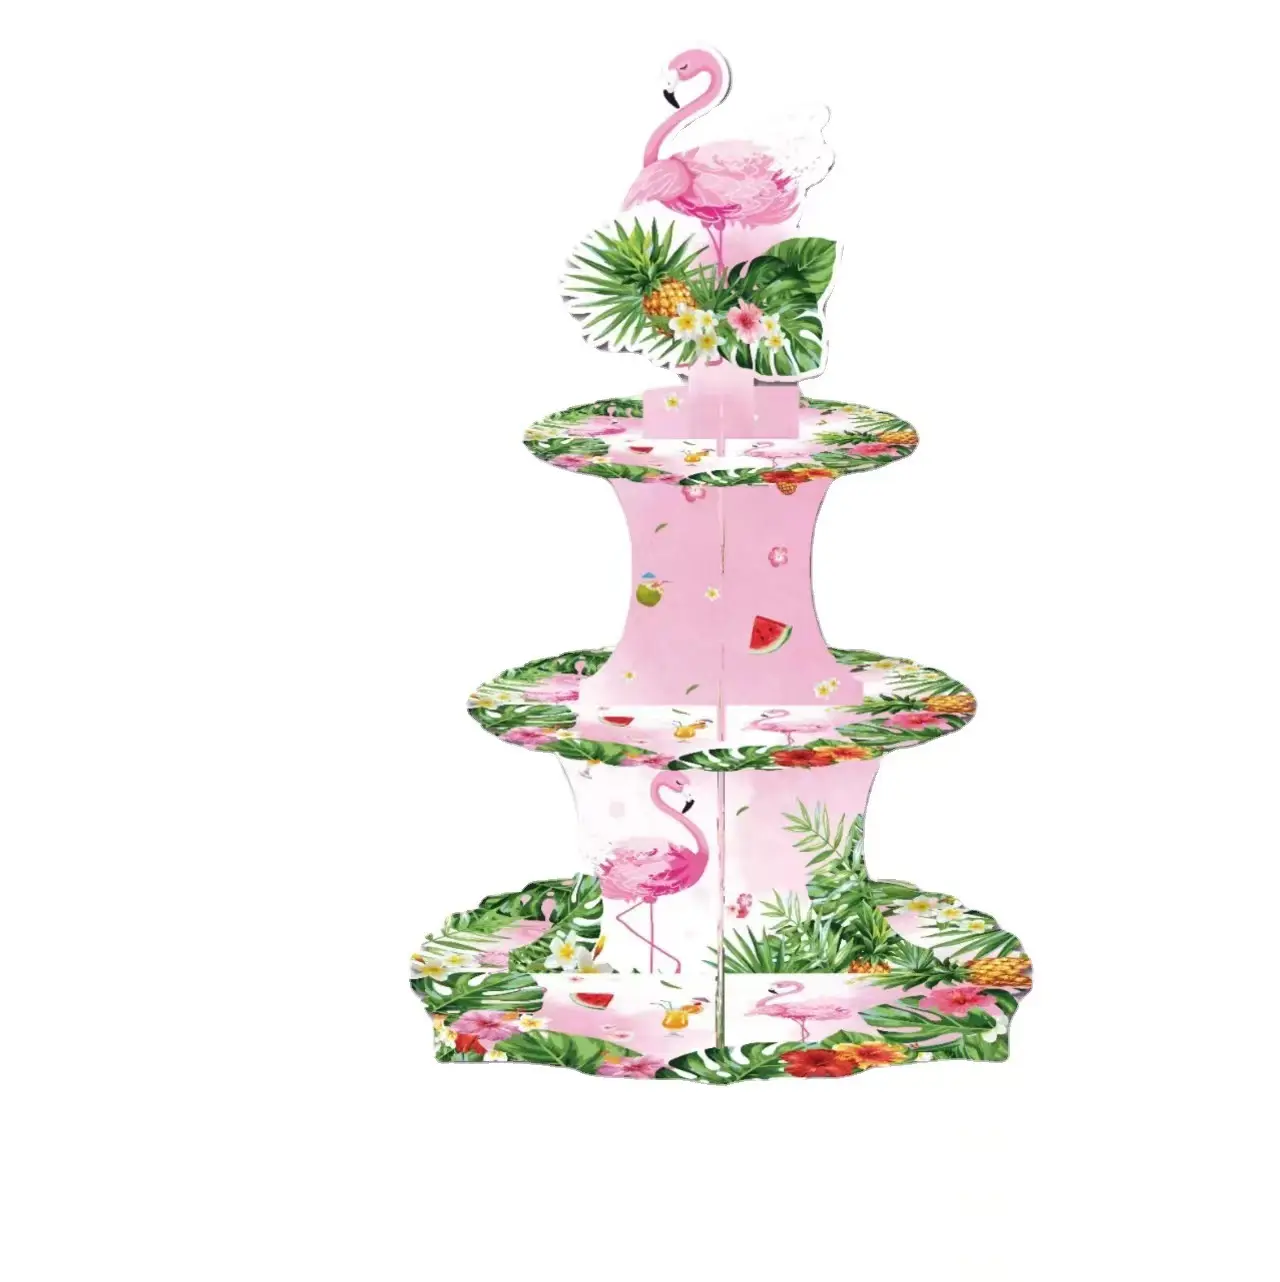 Drei schicht ige Kuchen regal dekoration mit hawaiiani schem Flamingo-Thema, faltbare Geburtstags feier zubehör, drei schicht iger Einweg-Kuchen tisch